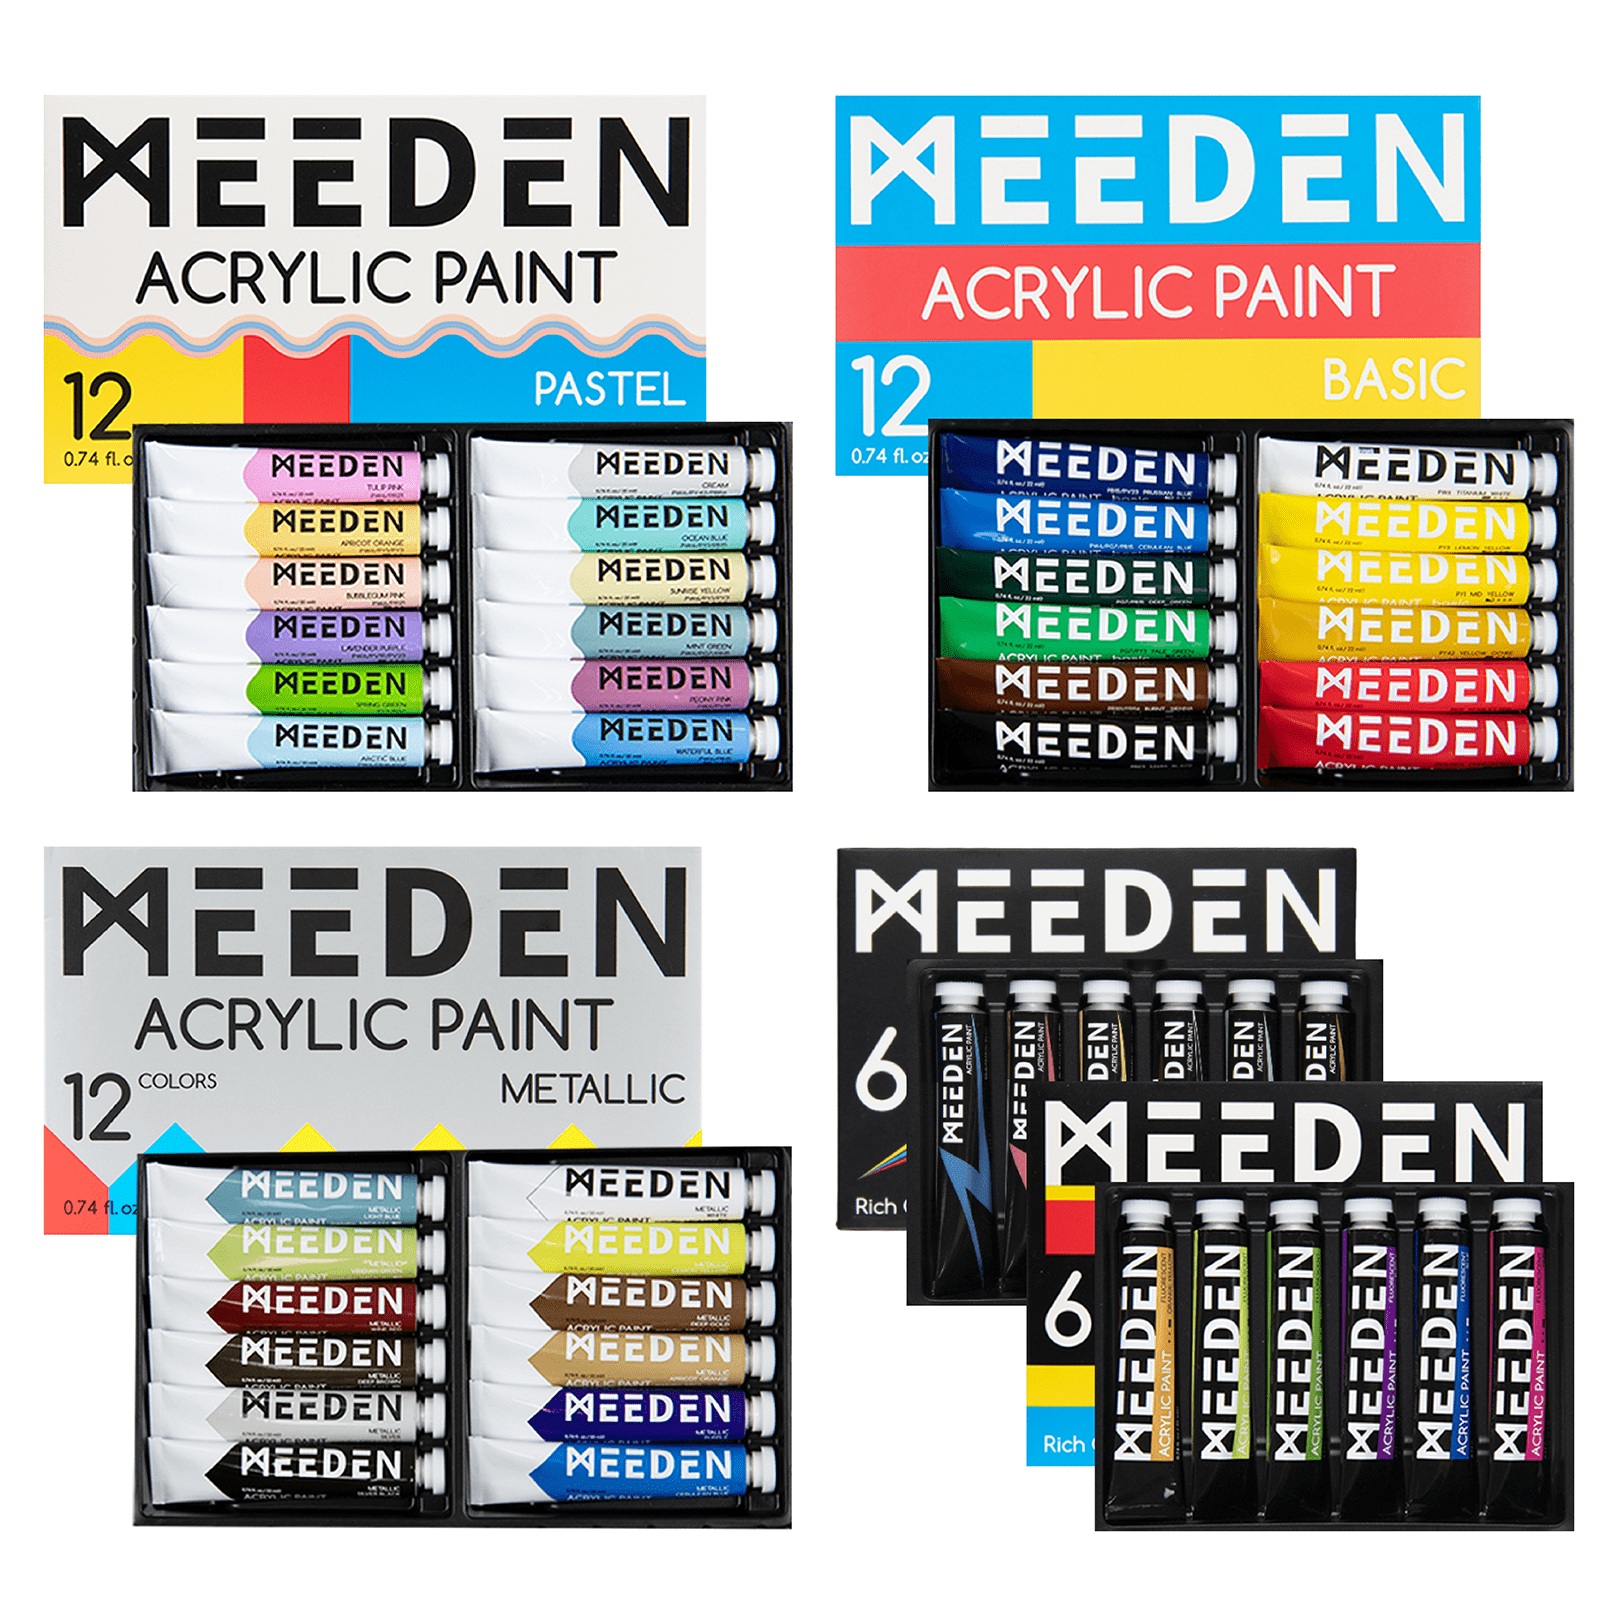 MEEDEN 12-Color Acrylic Paint, 60 ml/2 oz Tubes - MEEDEN ART